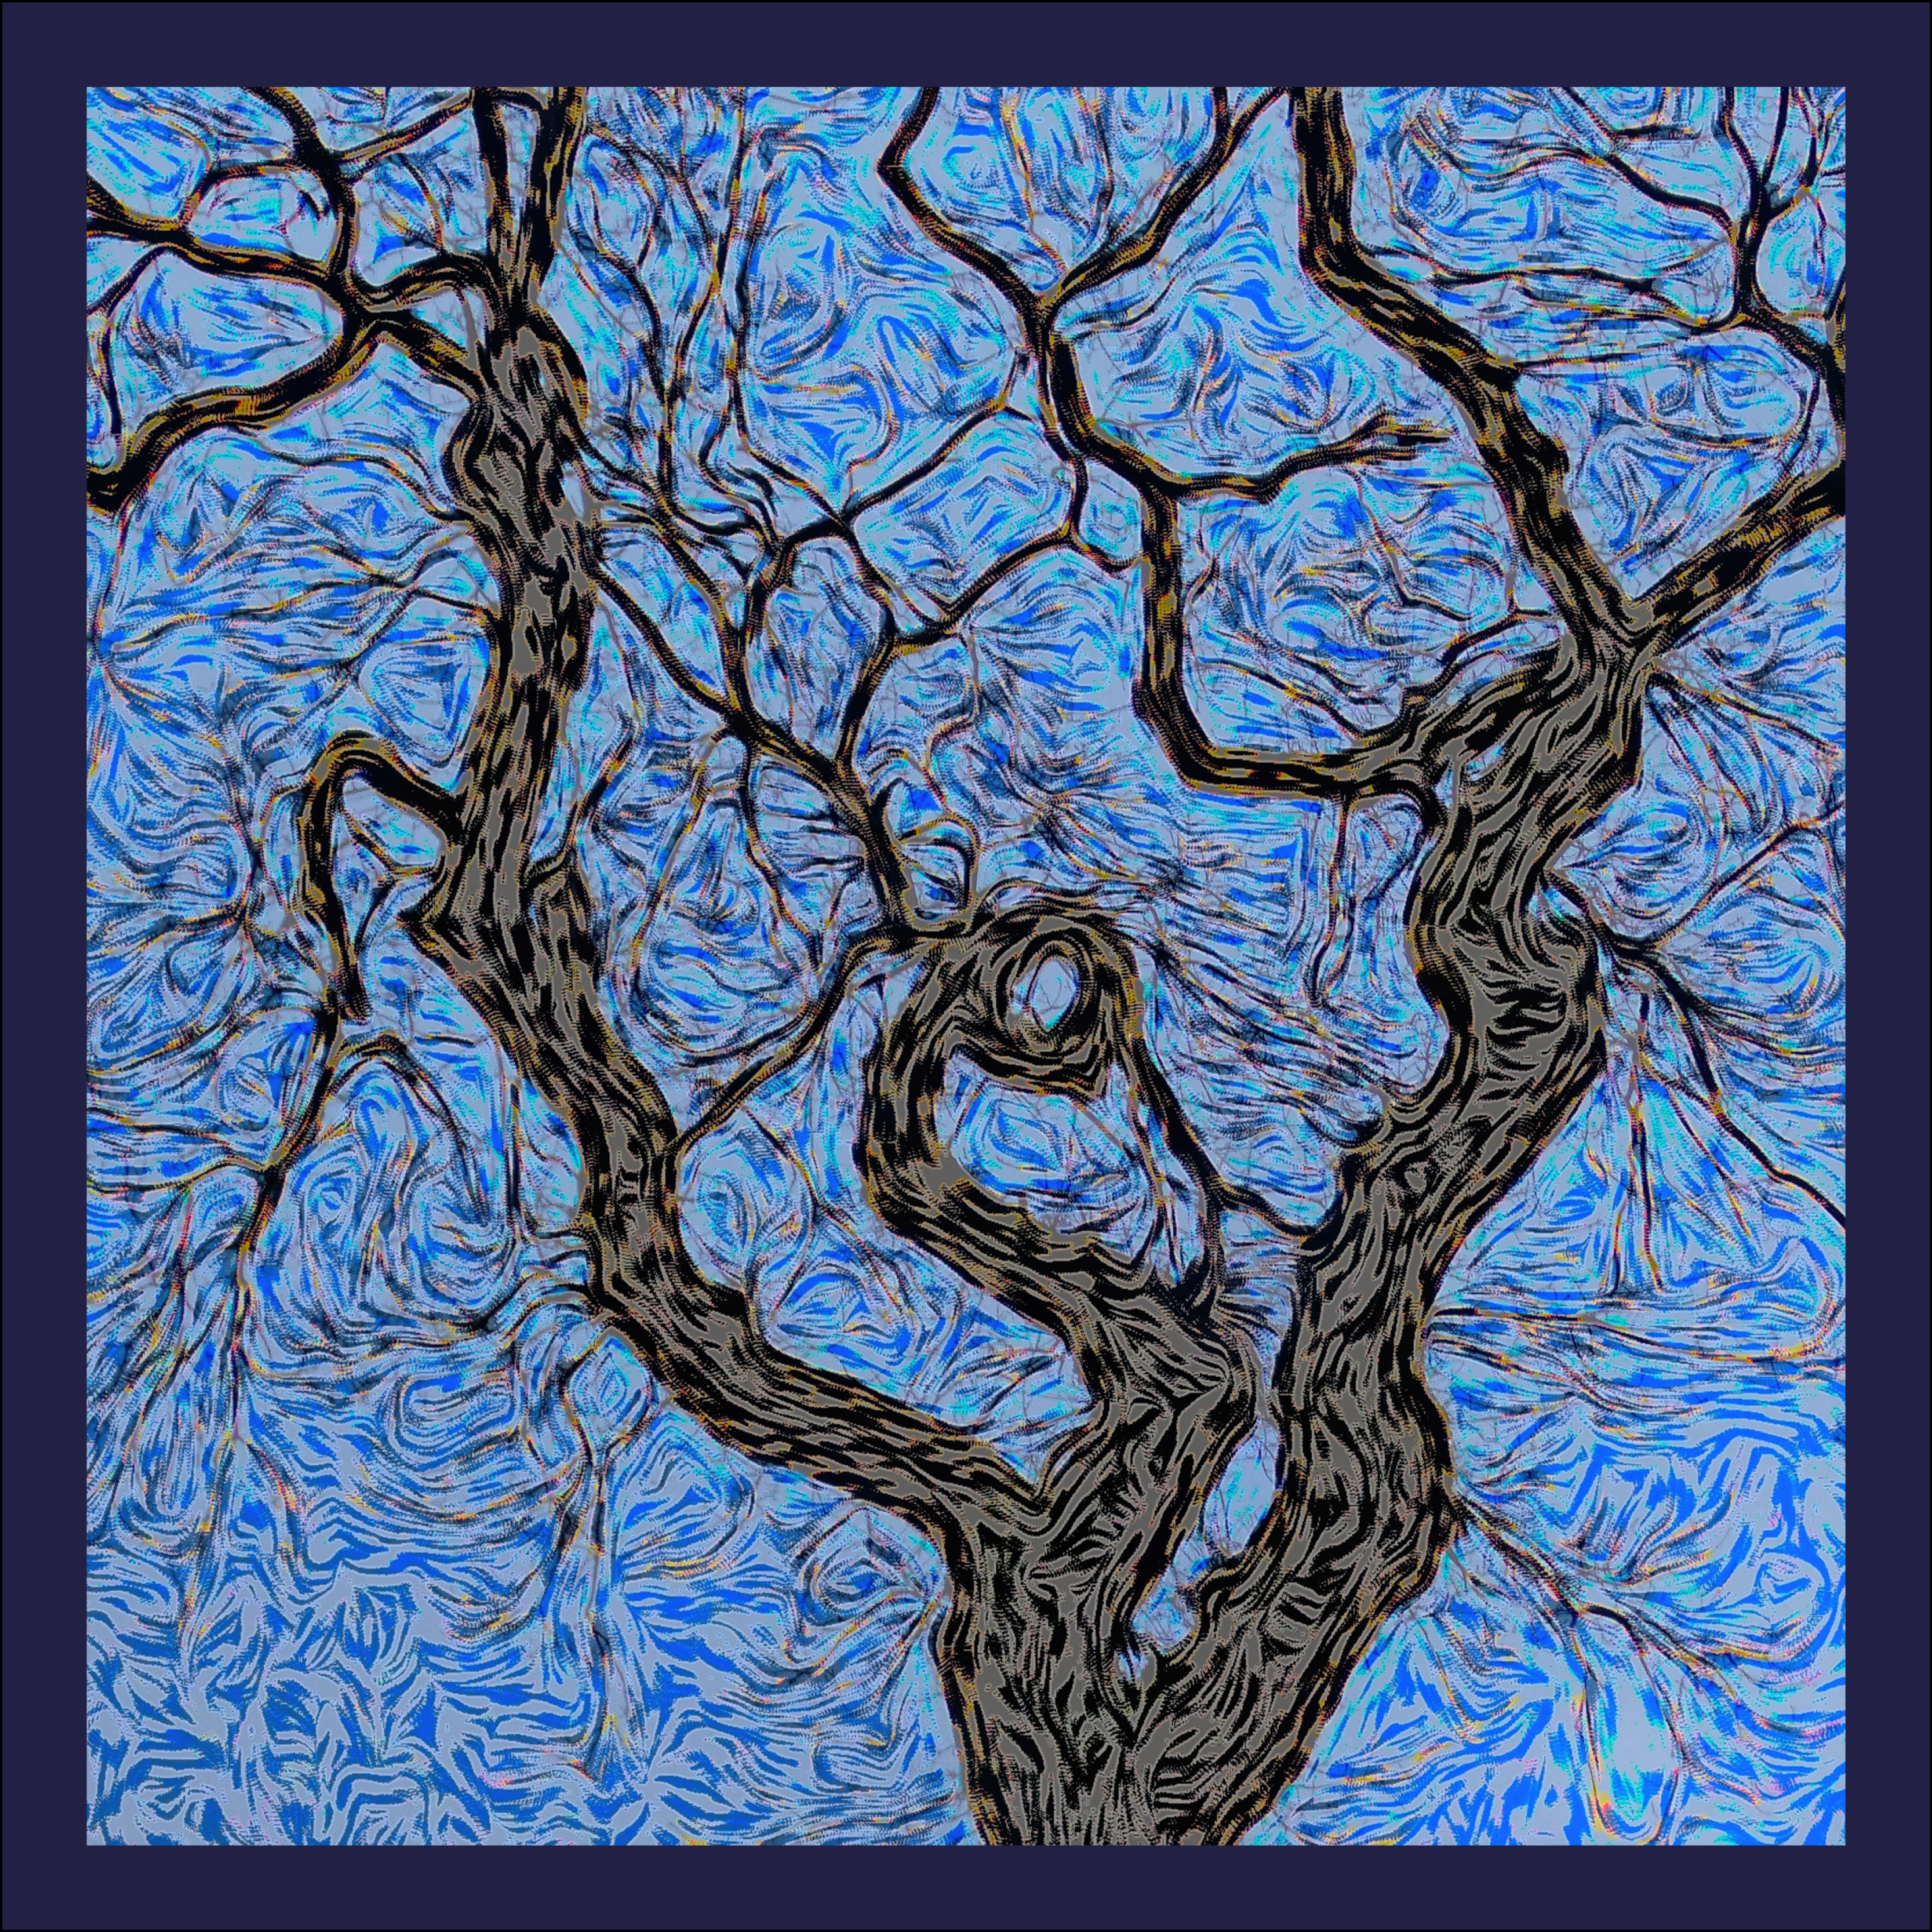 Blue oak